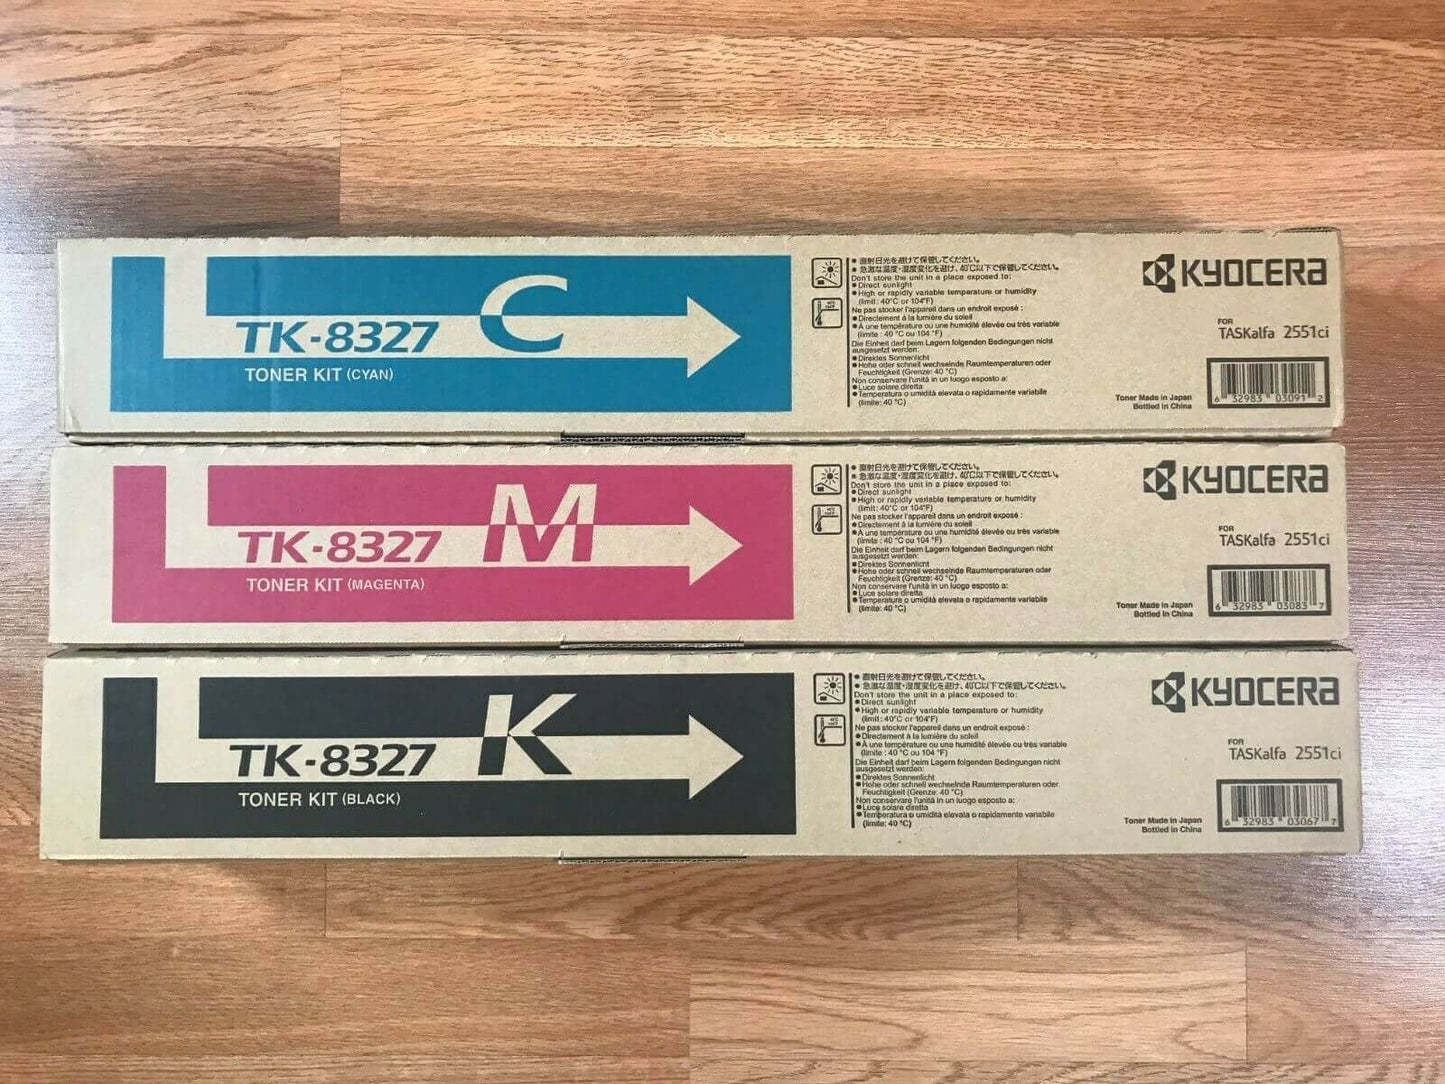 Genuine Kyocera TK-8327 CMK Toner Kit For TASKalfa 2551ci  Same Day Shipping!!!! - copier-clearance-center